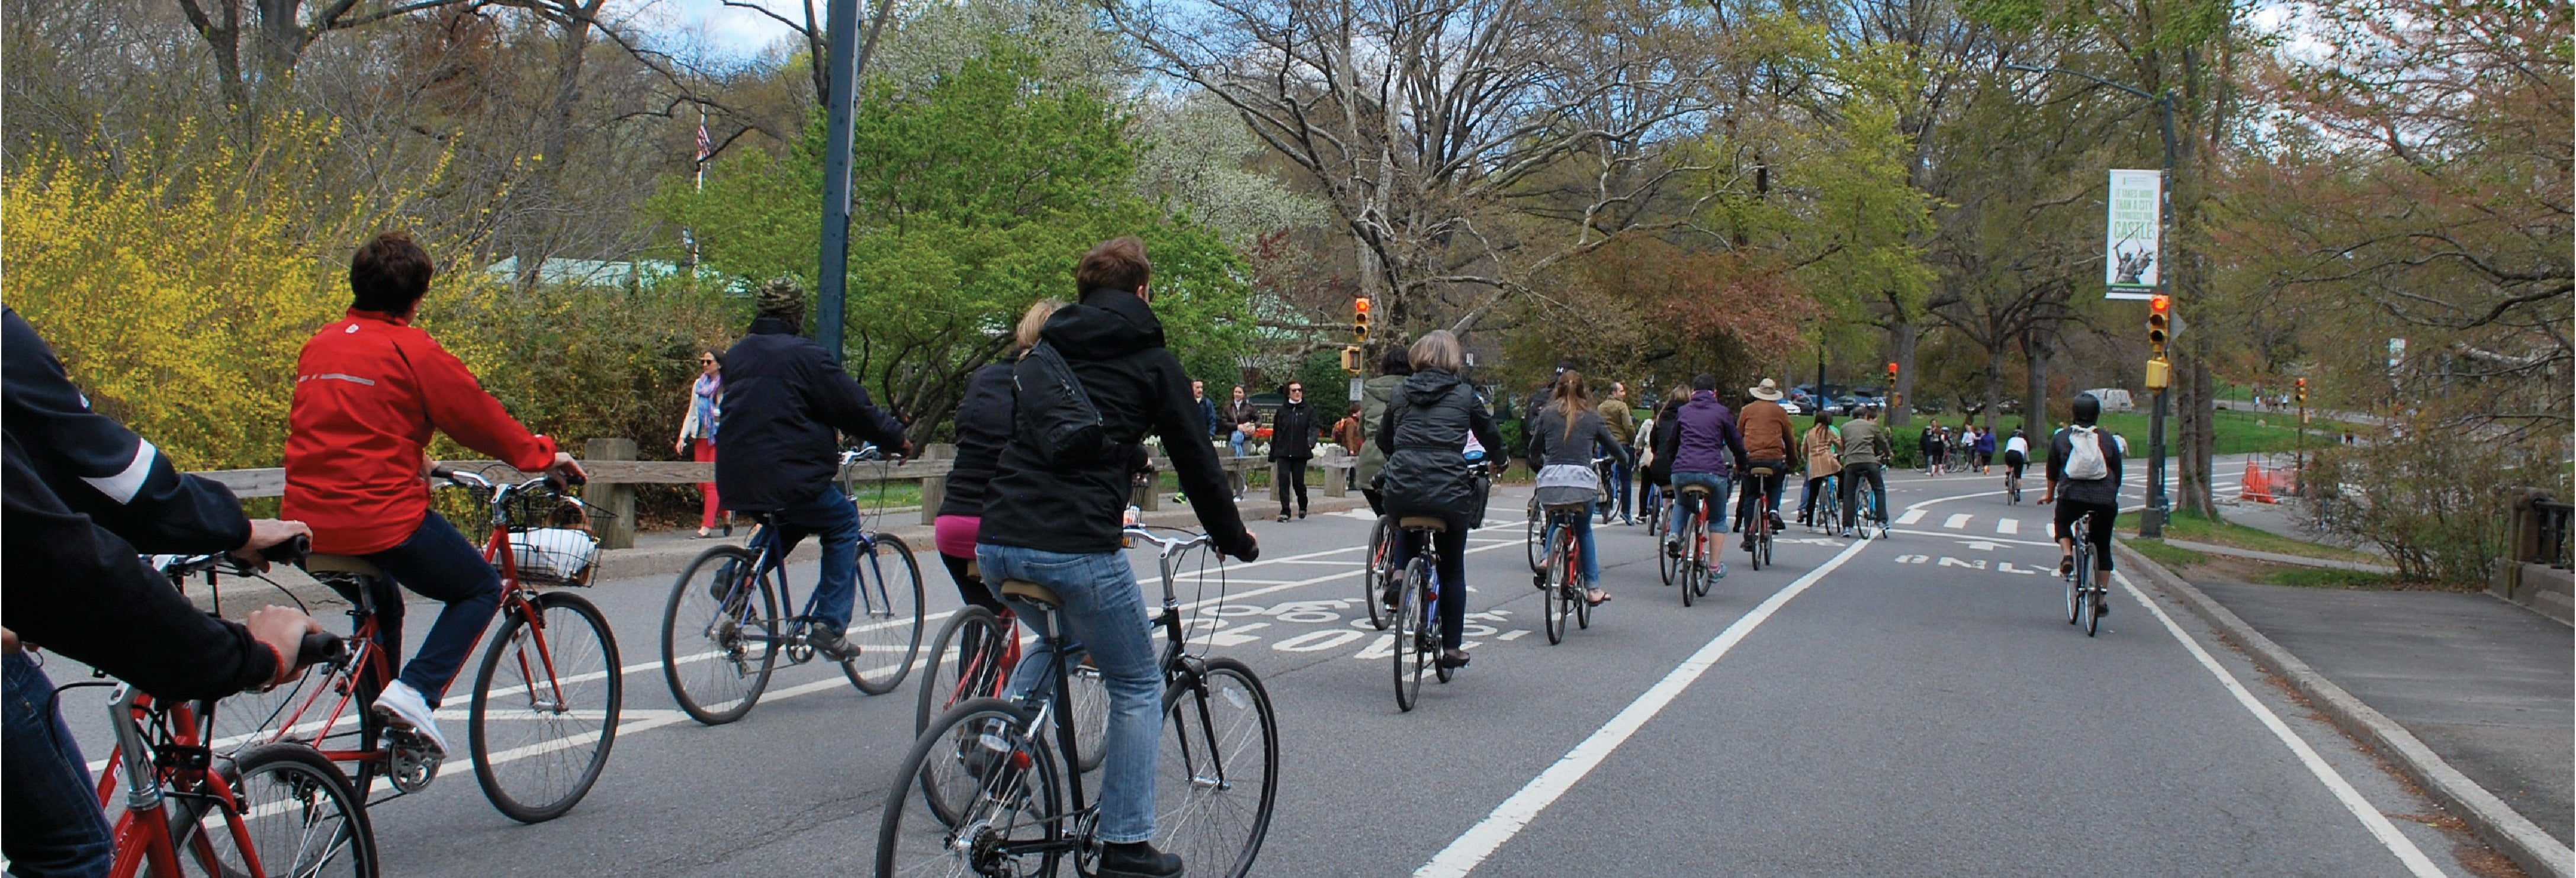 Balade en vélo dans Central Park